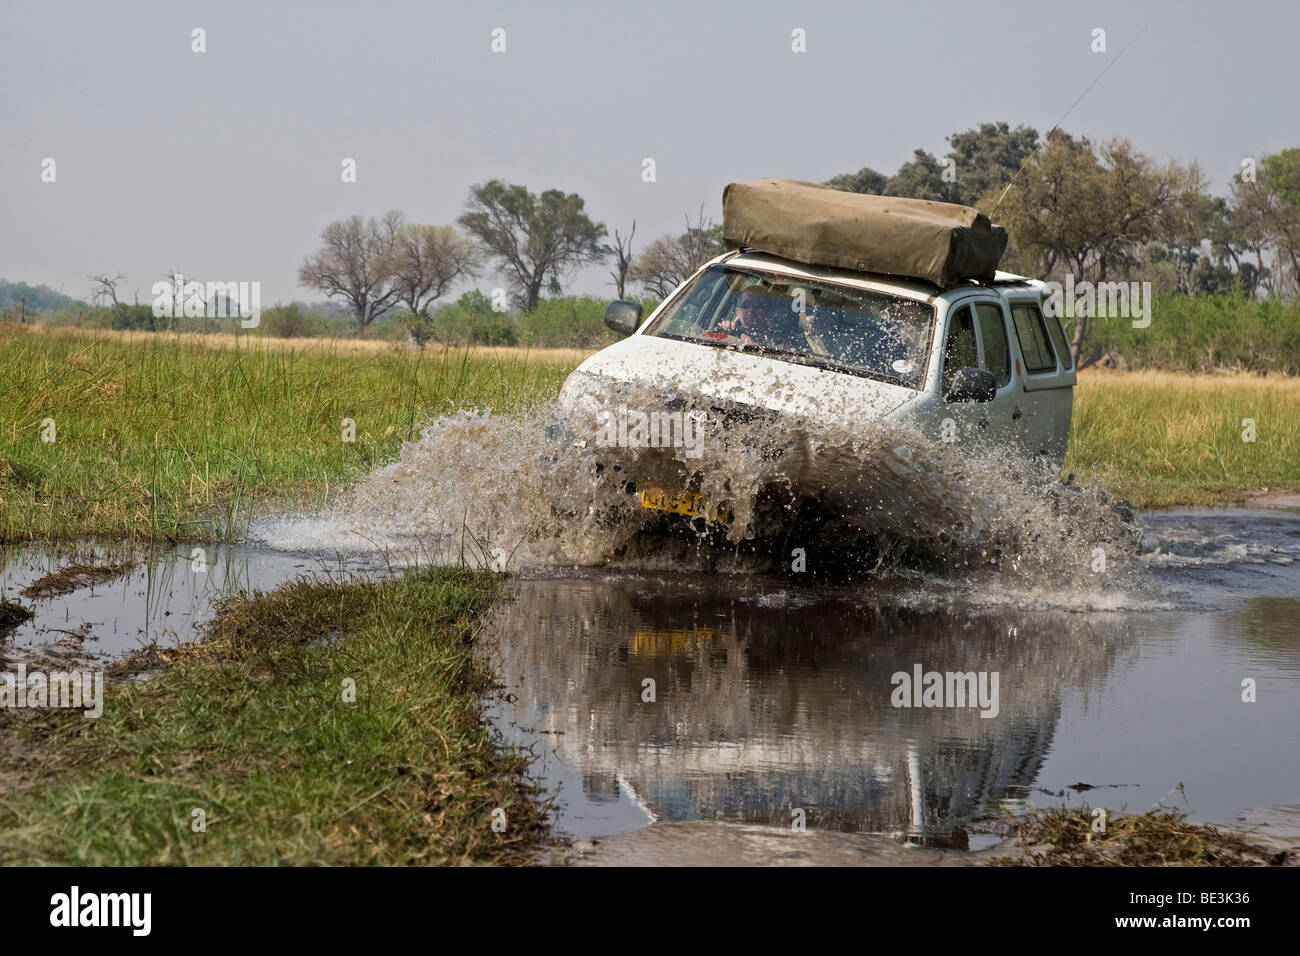 Allrad-Fahrzeug fahren durch Wasser, Moremi National Park Okavango Delta, Botswana, Afrika Stockfoto